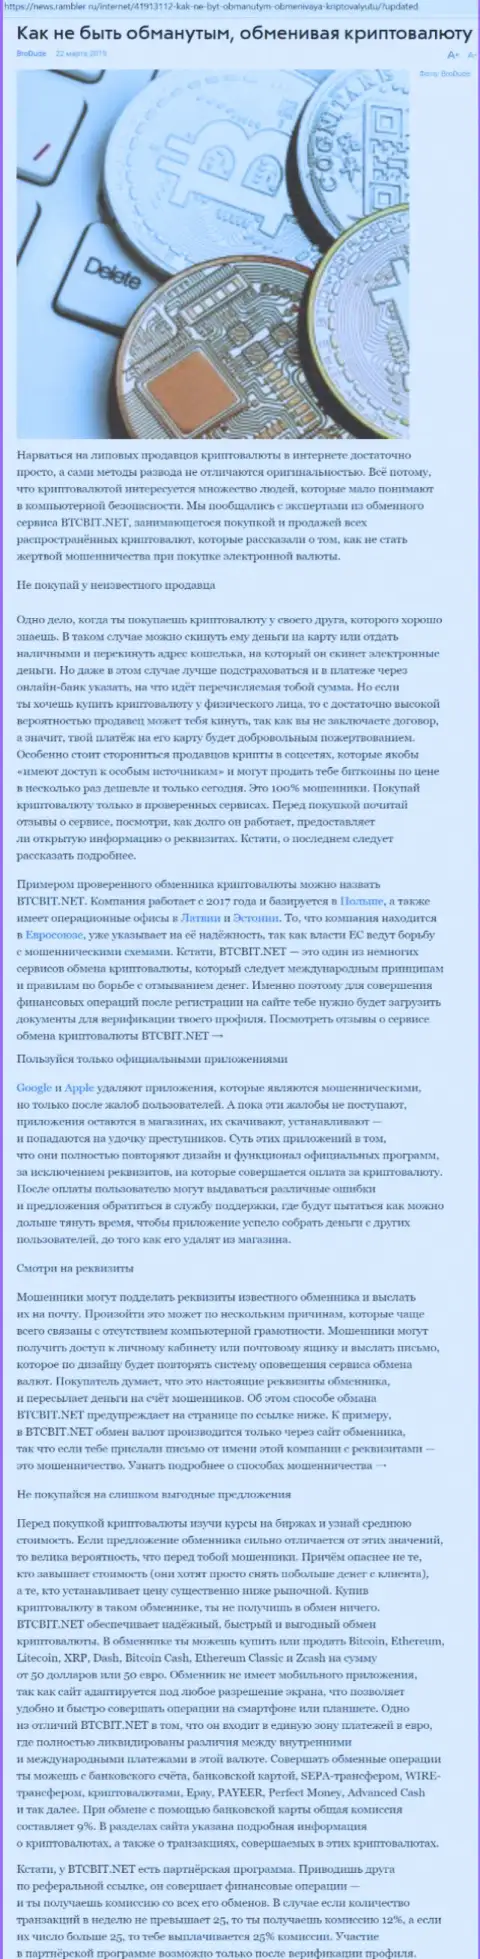 Статья об online обменнике BTC Bit на news rambler ru